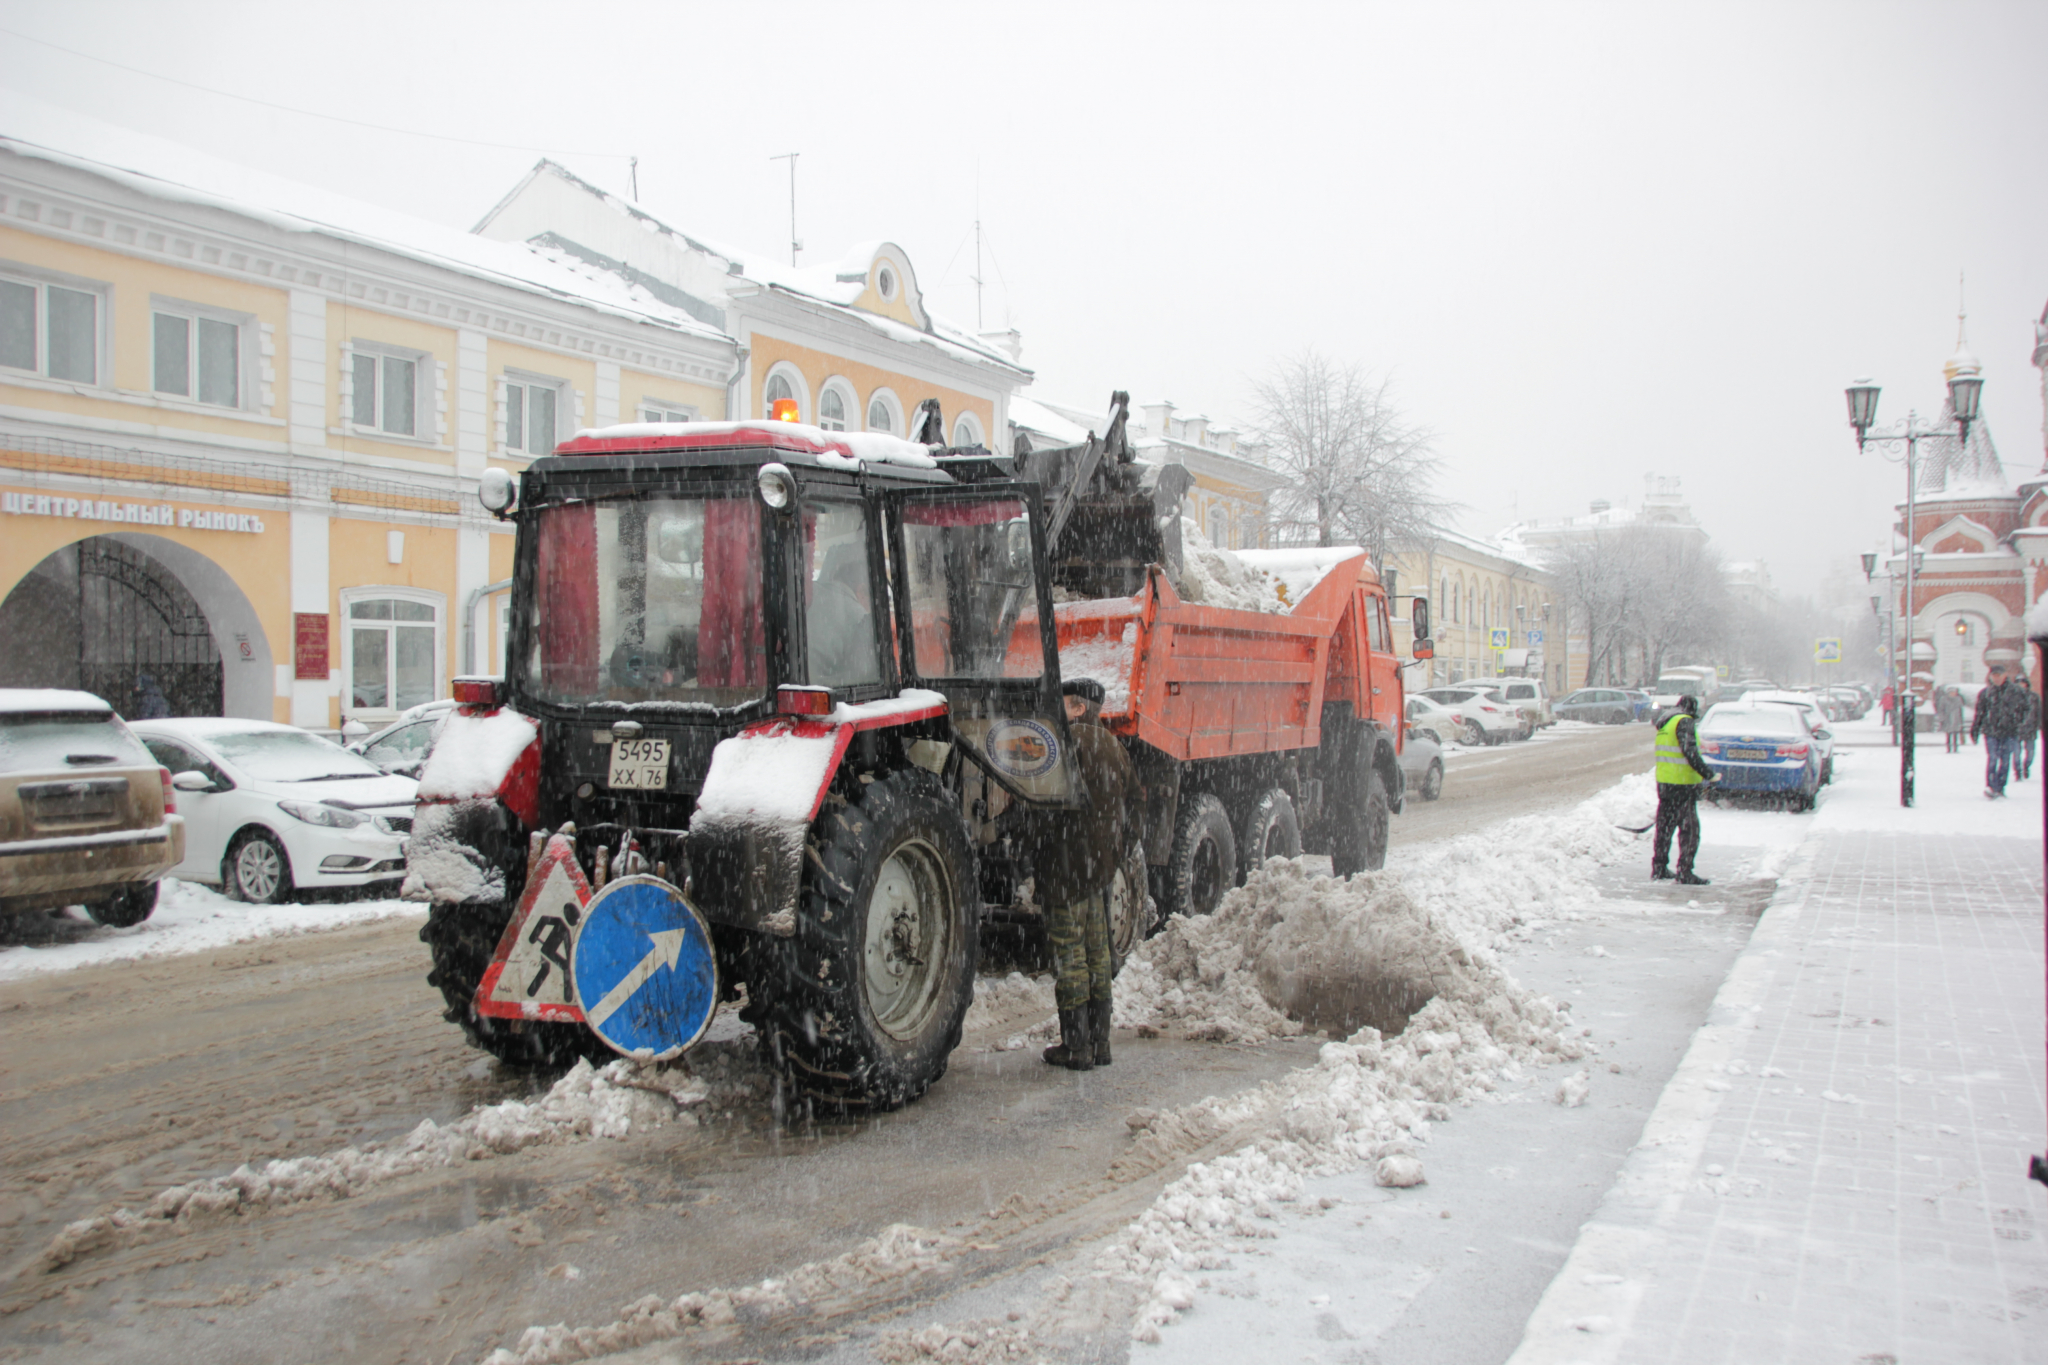 Ярославль трещит от снега, а тяжелая техника выйдет только вечером